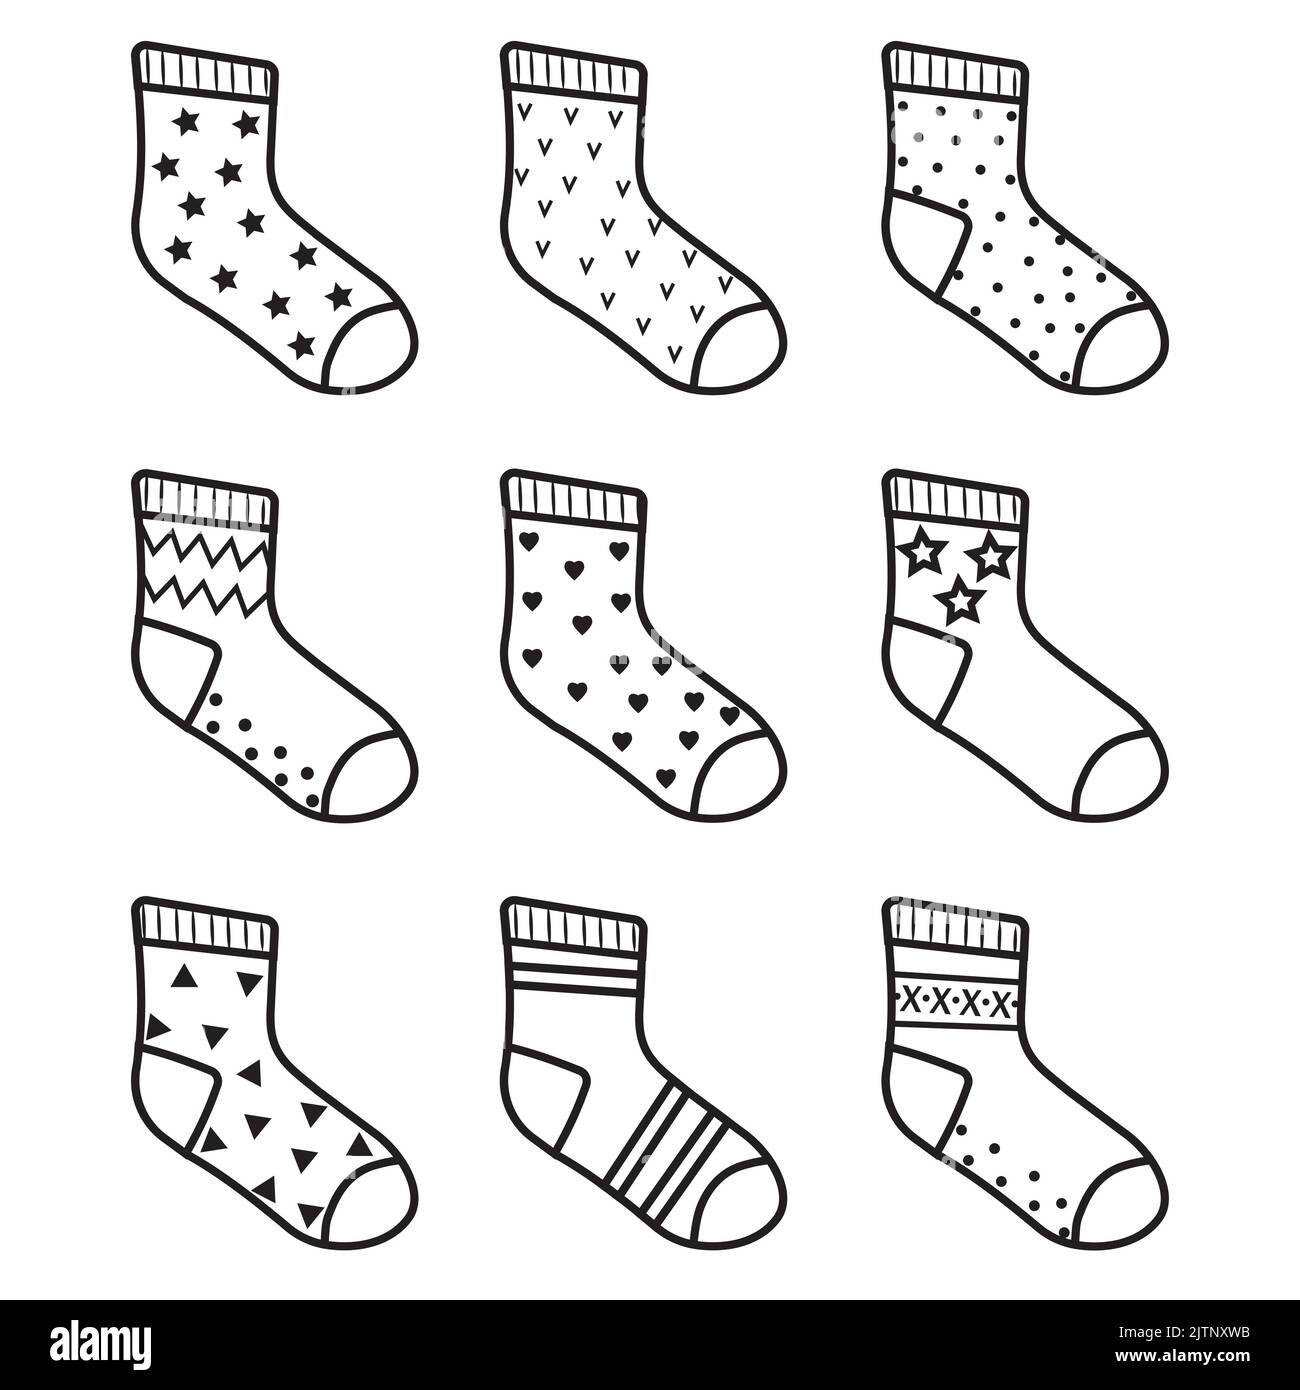 Children's socks, black outline, vector isolated illustration Stock Vector  Image & Art - Alamy